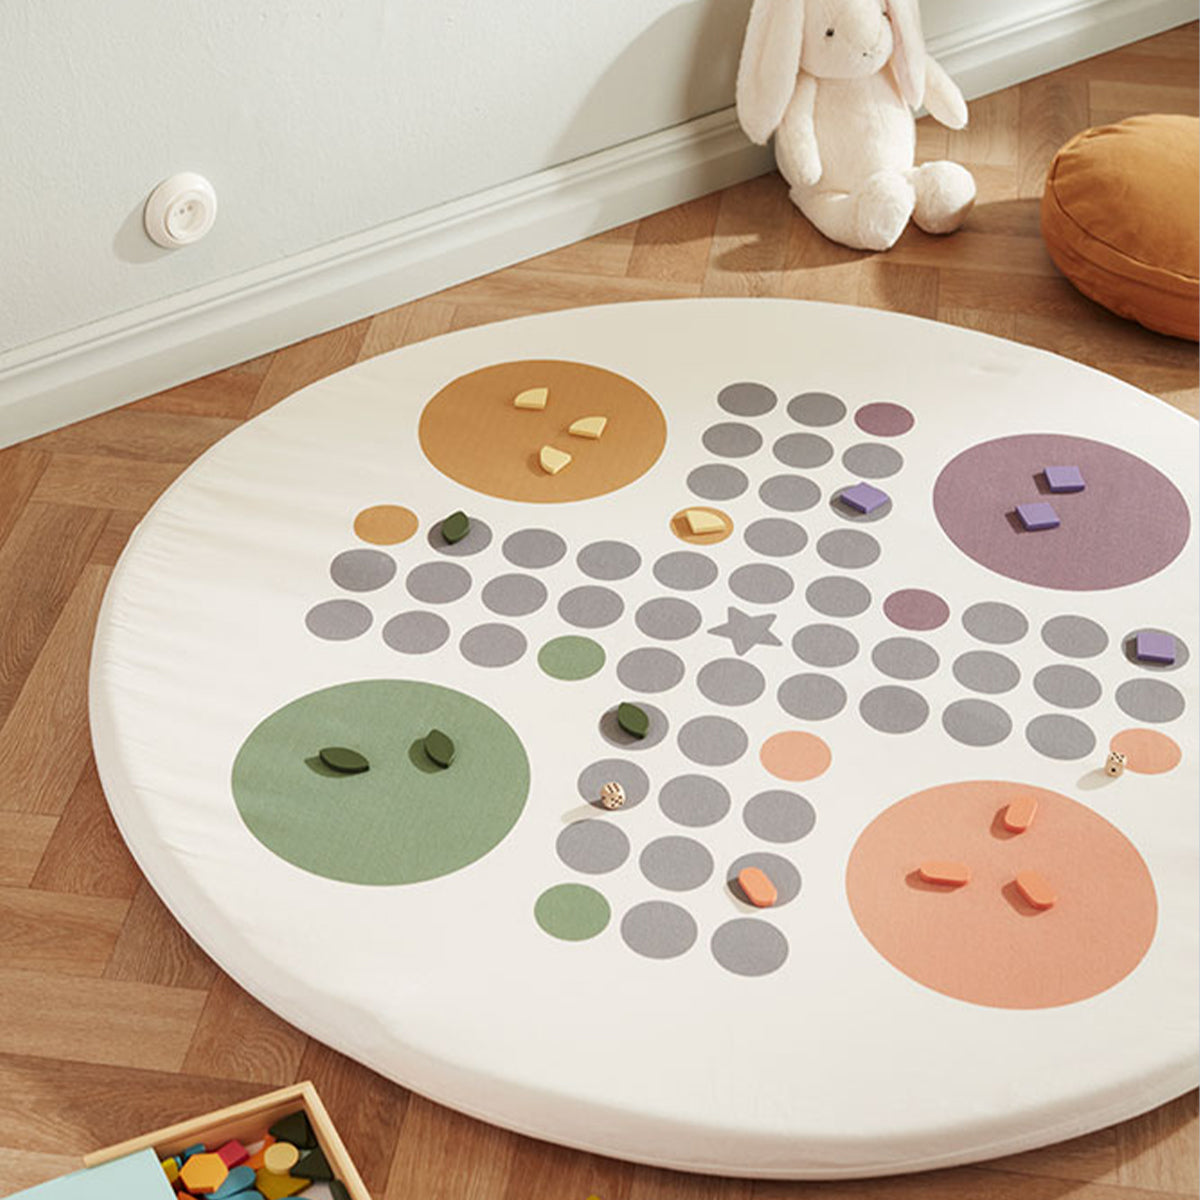 Met de Kid's Concept mozaïek puzzel box kan jouw kindje zich uren vermaken! Met deze mozaïek puzzel kan jouw kindje maken wat hij of zij wil, of één van de kaartjes proberen na te maken. VanZus.